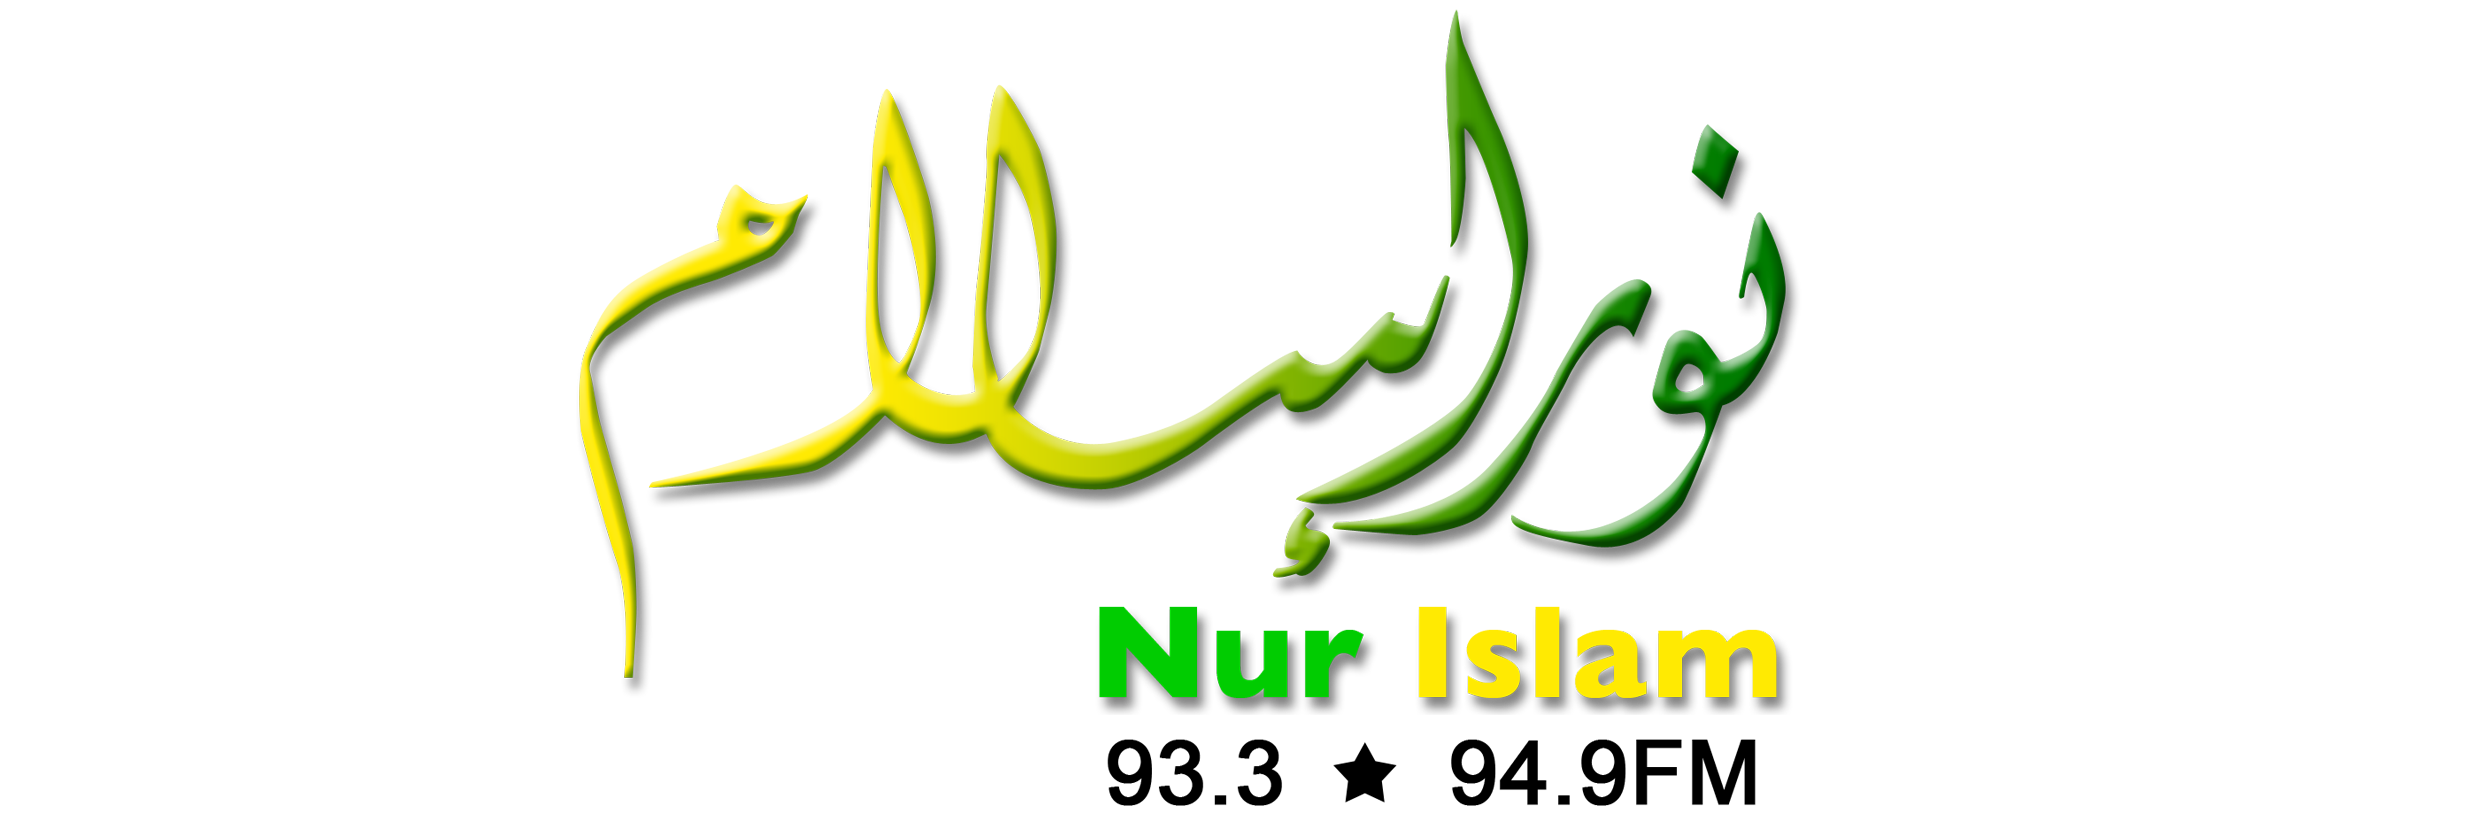 Rangkaian Nur Islam